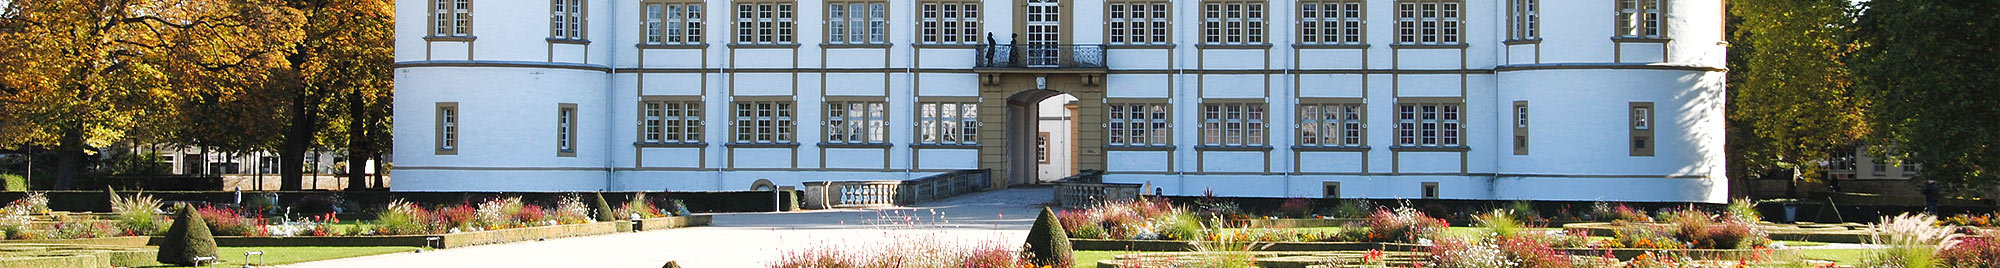 Schloss - Kanzlei am Schloss – Menne & Collegen